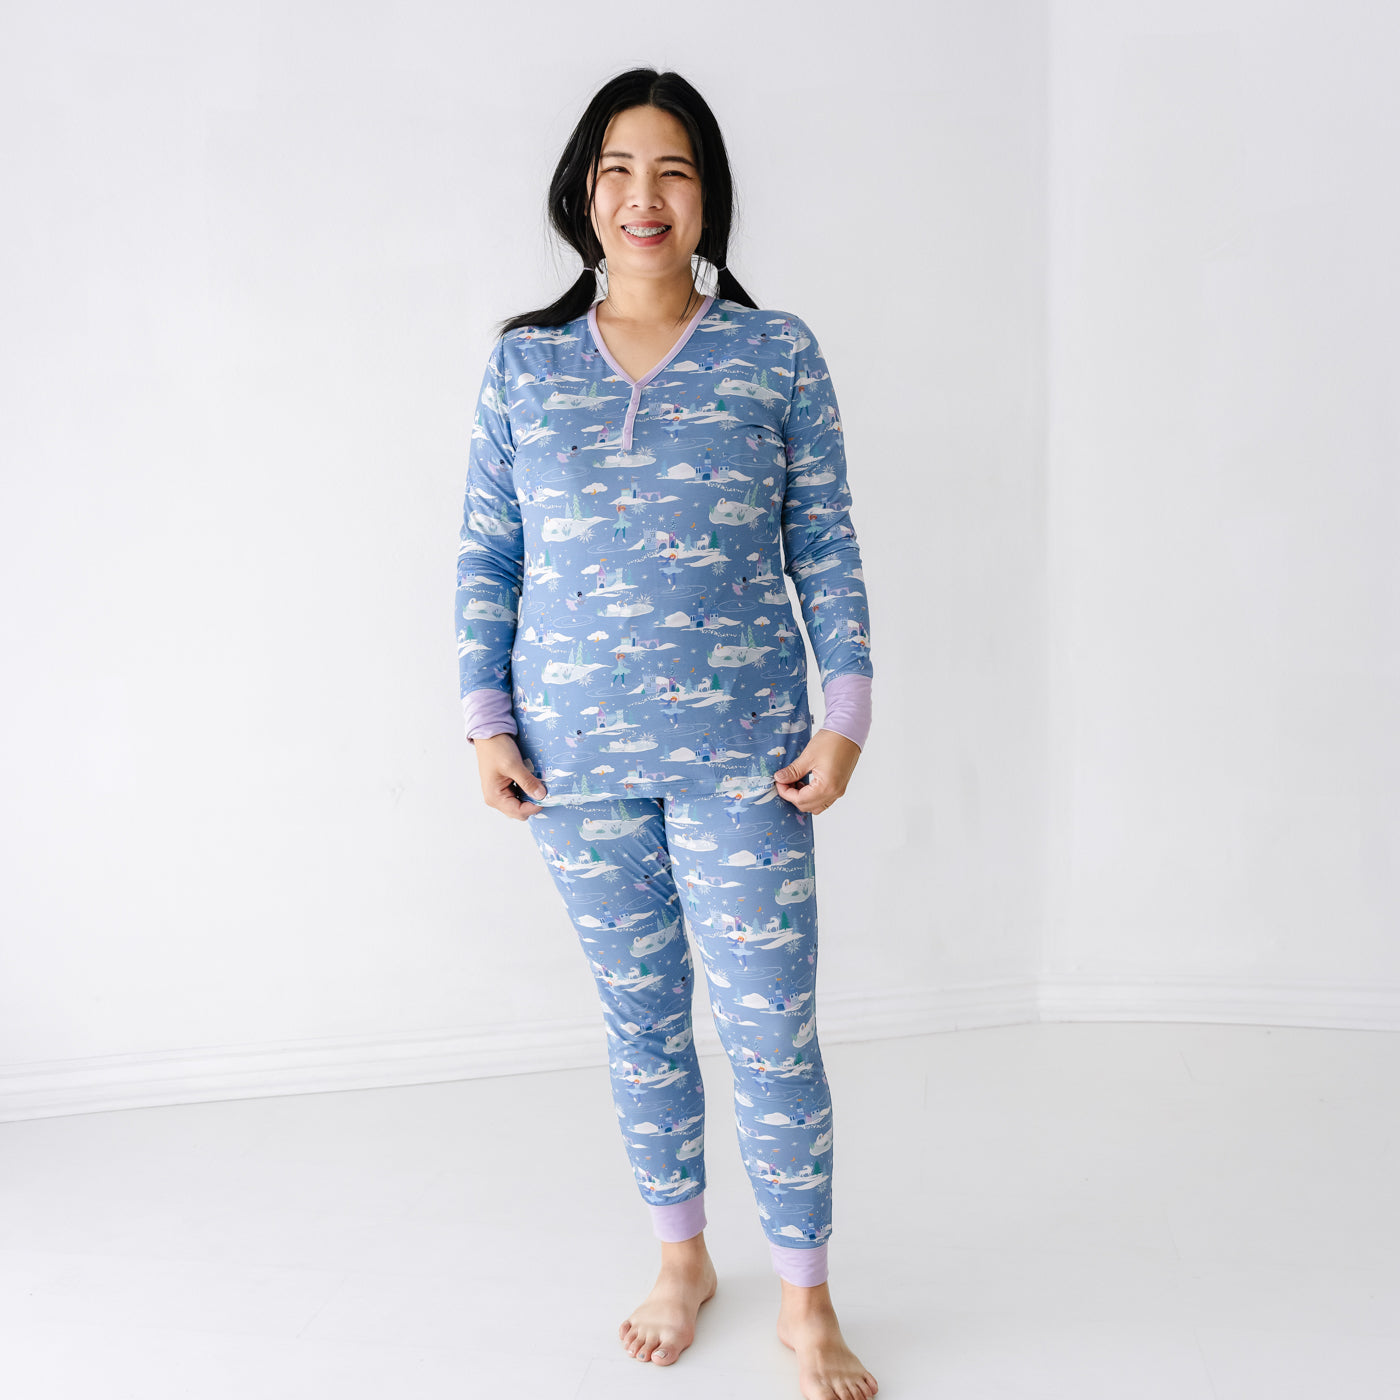 V Neck Nightwear Sleep Set Pajamas Ice Silk Printing Long Sleeve